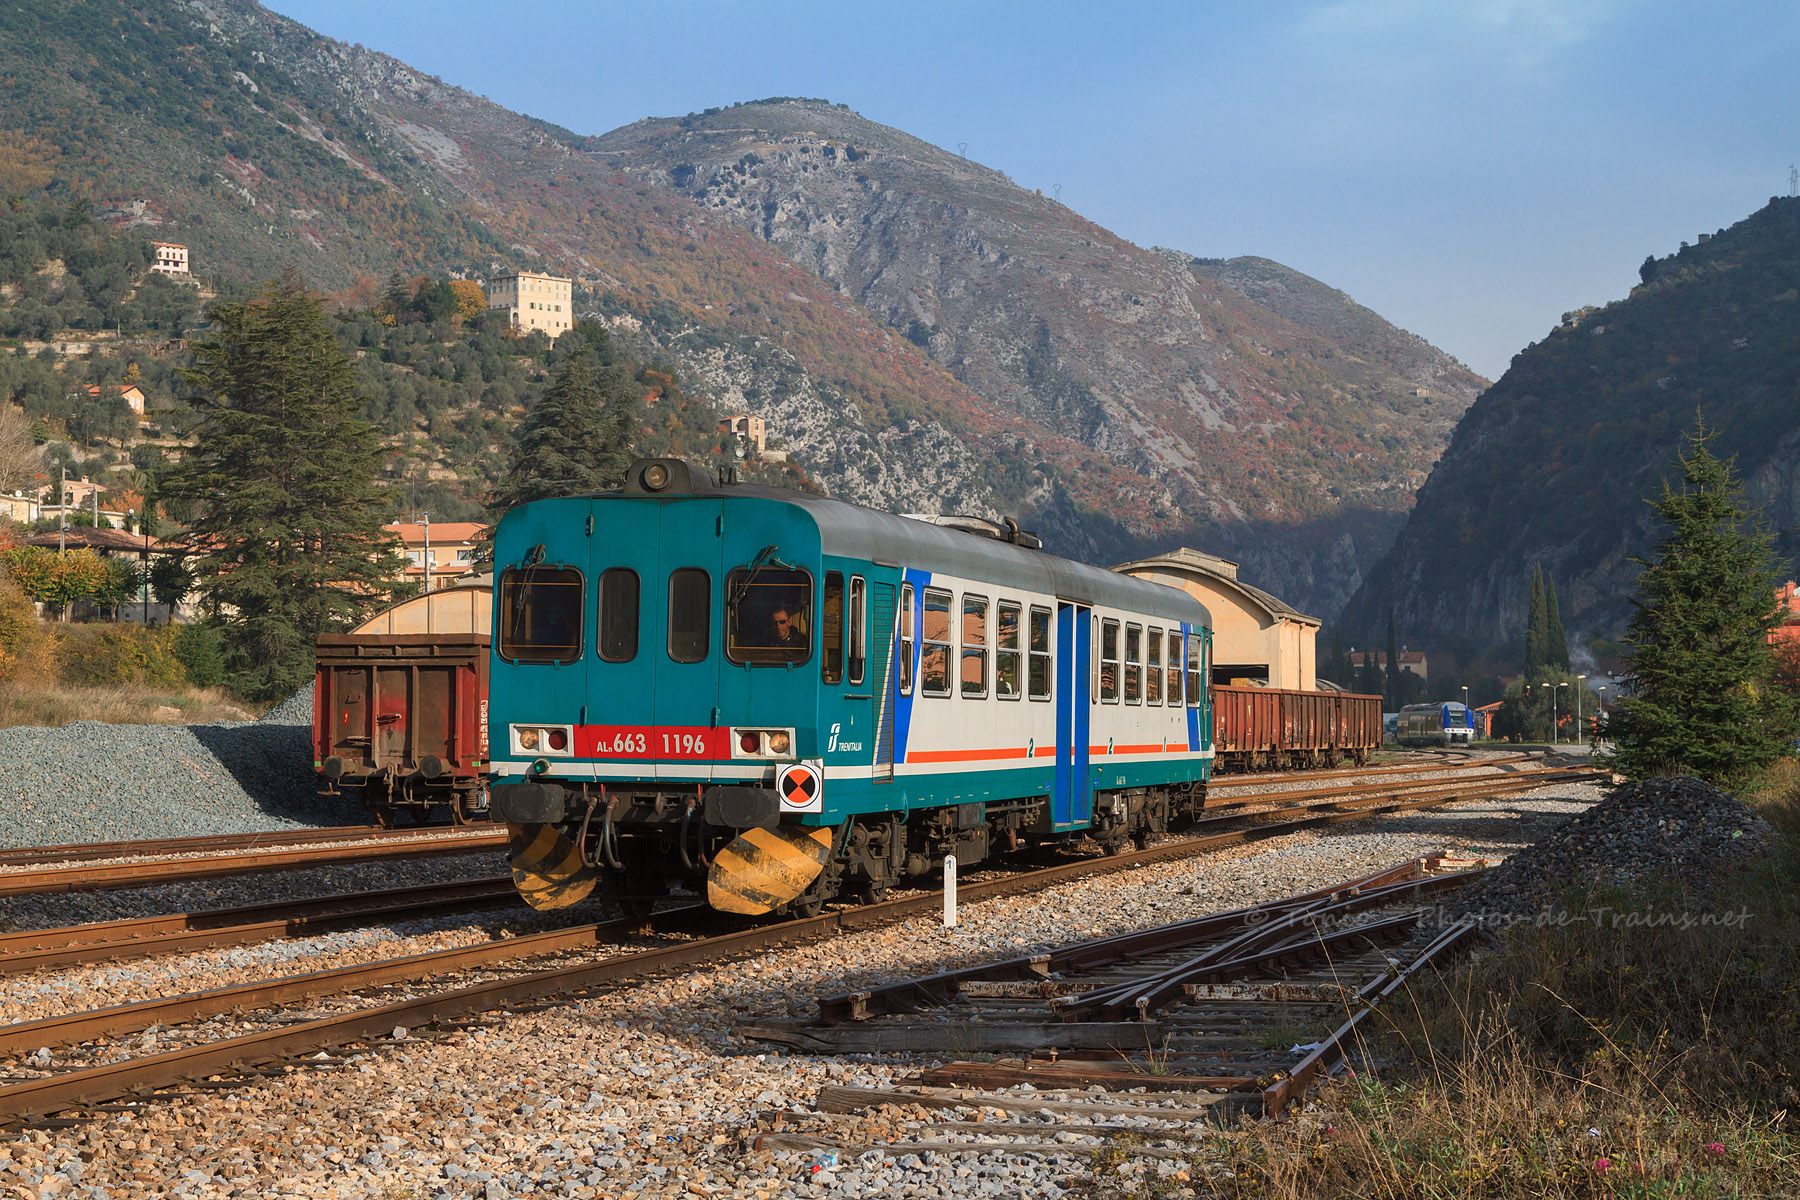 Départ de la gare de Breil pour l'Aln663 1196, assurant le 22944 Cuneo - Nice-Ville.